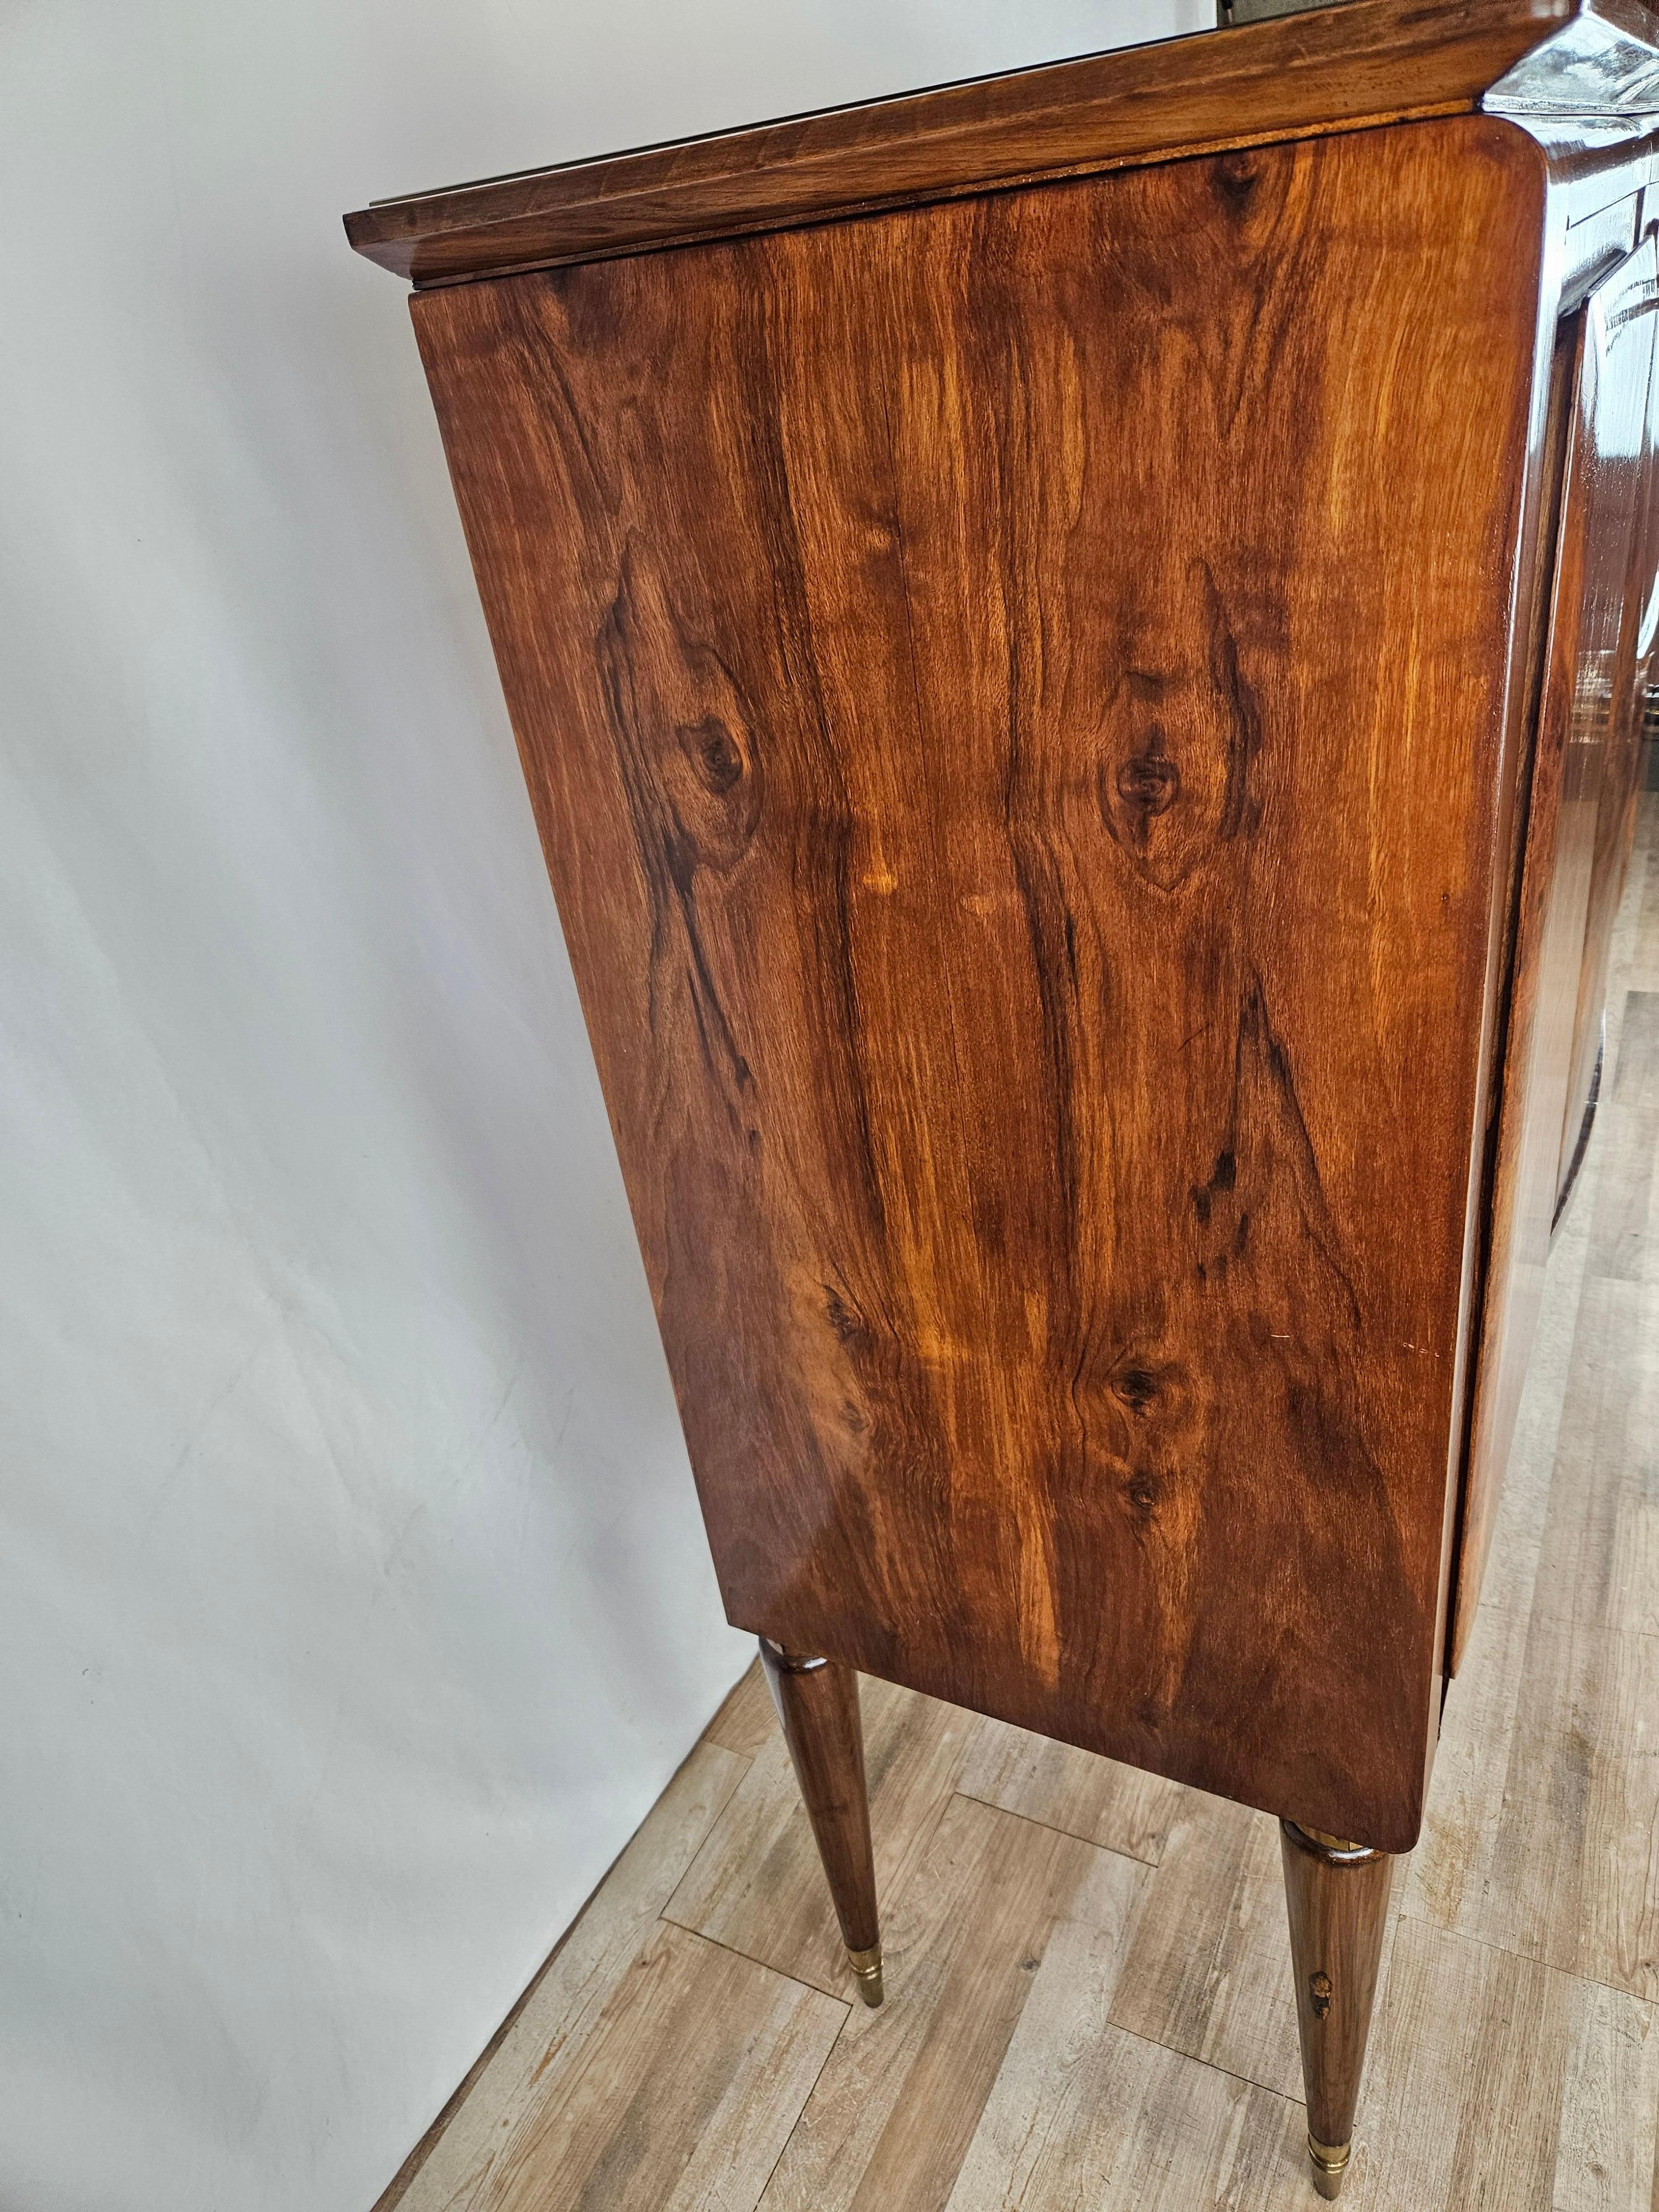 Elegantes Sideboard italienischer Herkunft aus der Mitte des 20. Jahrhunderts, hochwertig verarbeitet in Nussbaum mit Ahornleisten an Türen und Innenschubladen.

Der Schrank hat eine gewölbte Glasplatte an der Vorderseite, drei große Türen mit einem